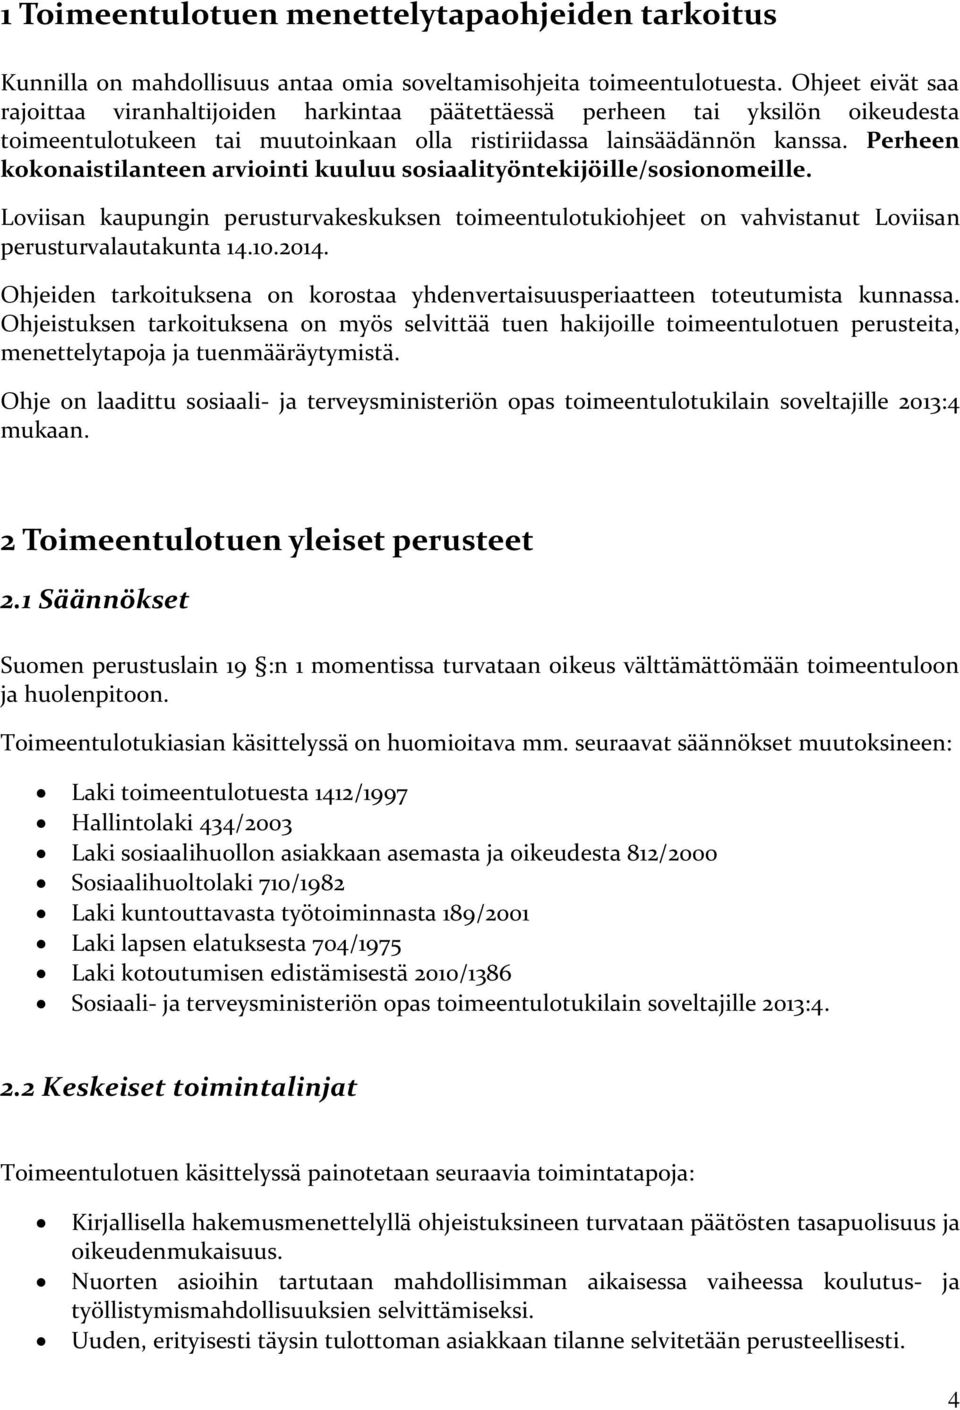 Perheen kokonaistilanteen arviointi kuuluu sosiaalityöntekijöille/sosionomeille. Loviisan kaupungin perusturvakeskuksen toimeentulotukiohjeet on vahvistanut Loviisan perusturvalautakunta 14.10.2014.